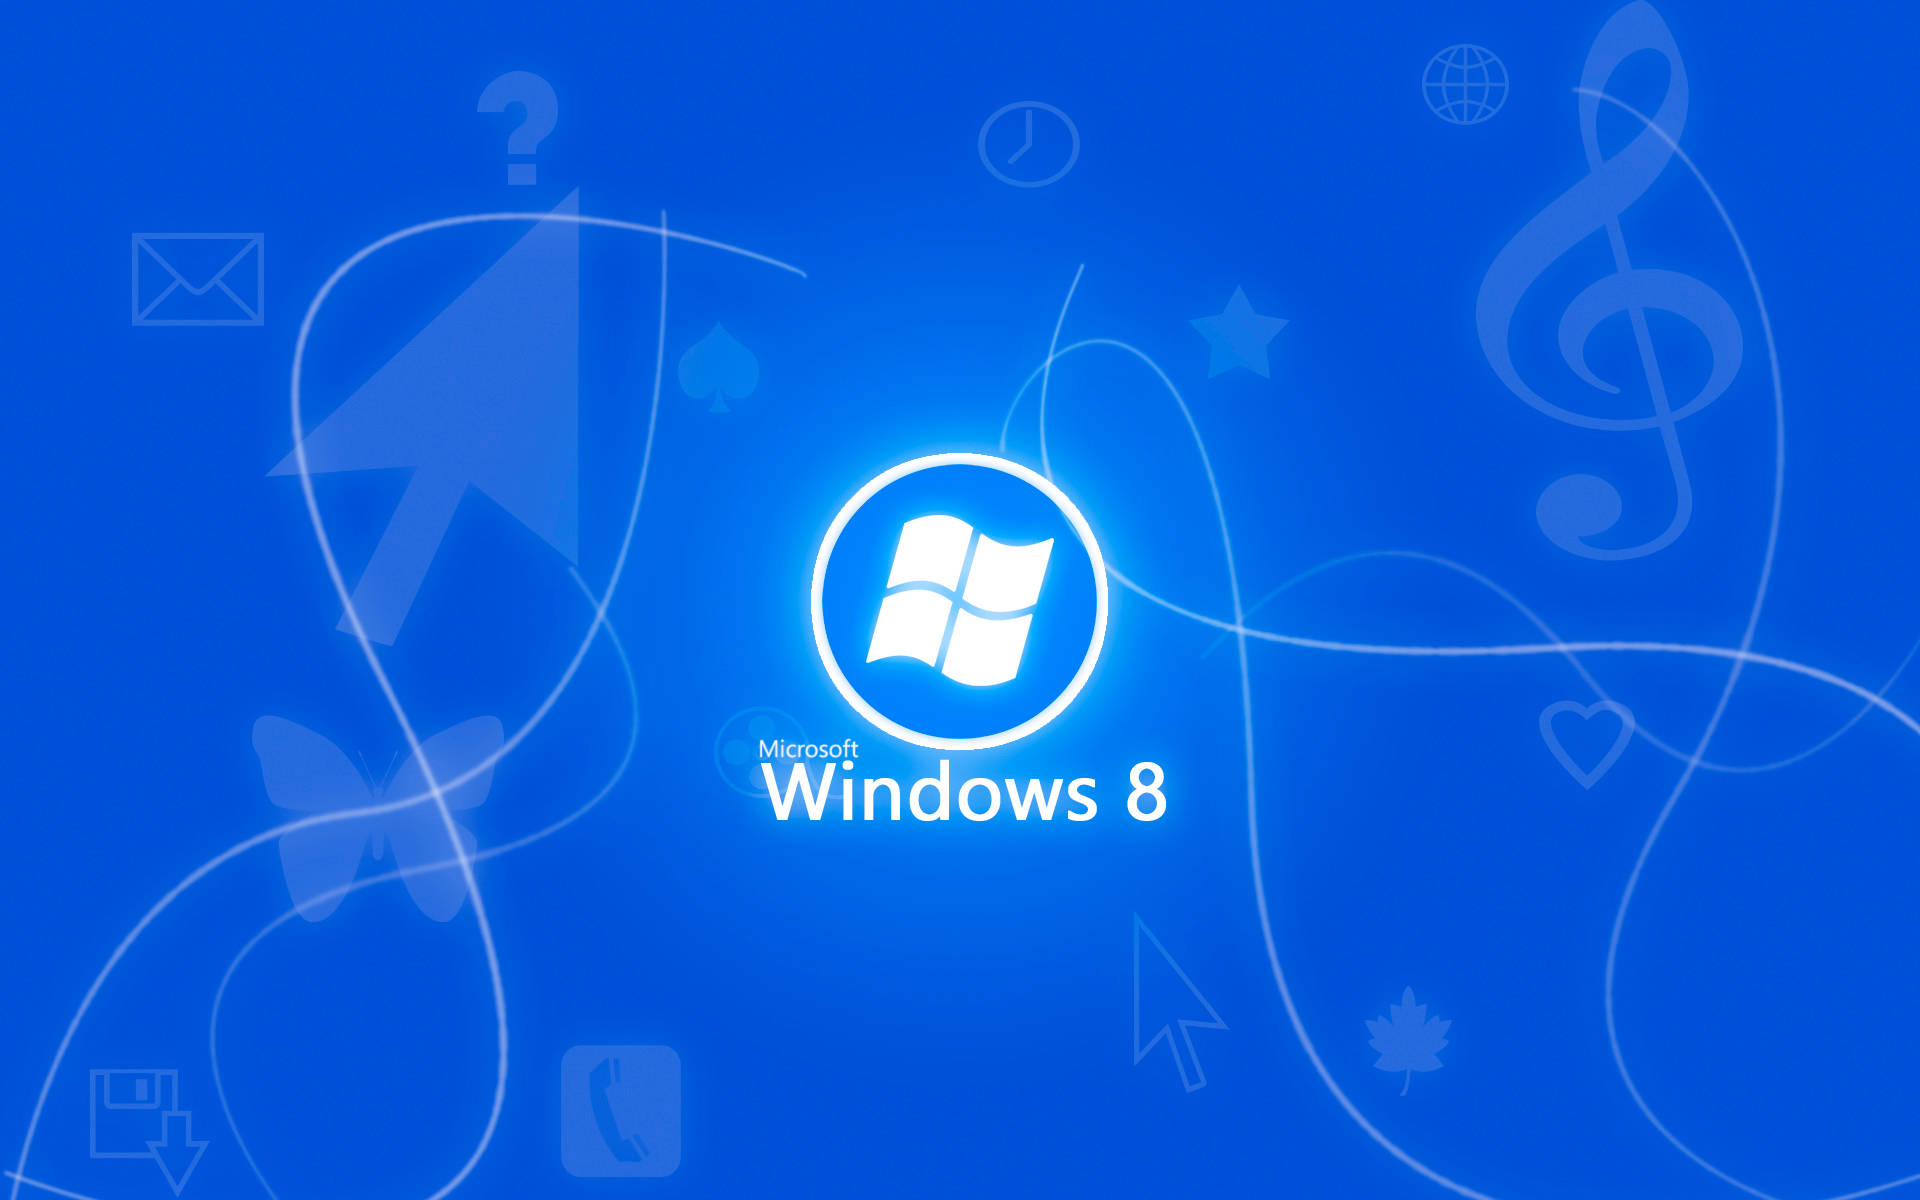 Neon Windows 8 Logo In Blue Background